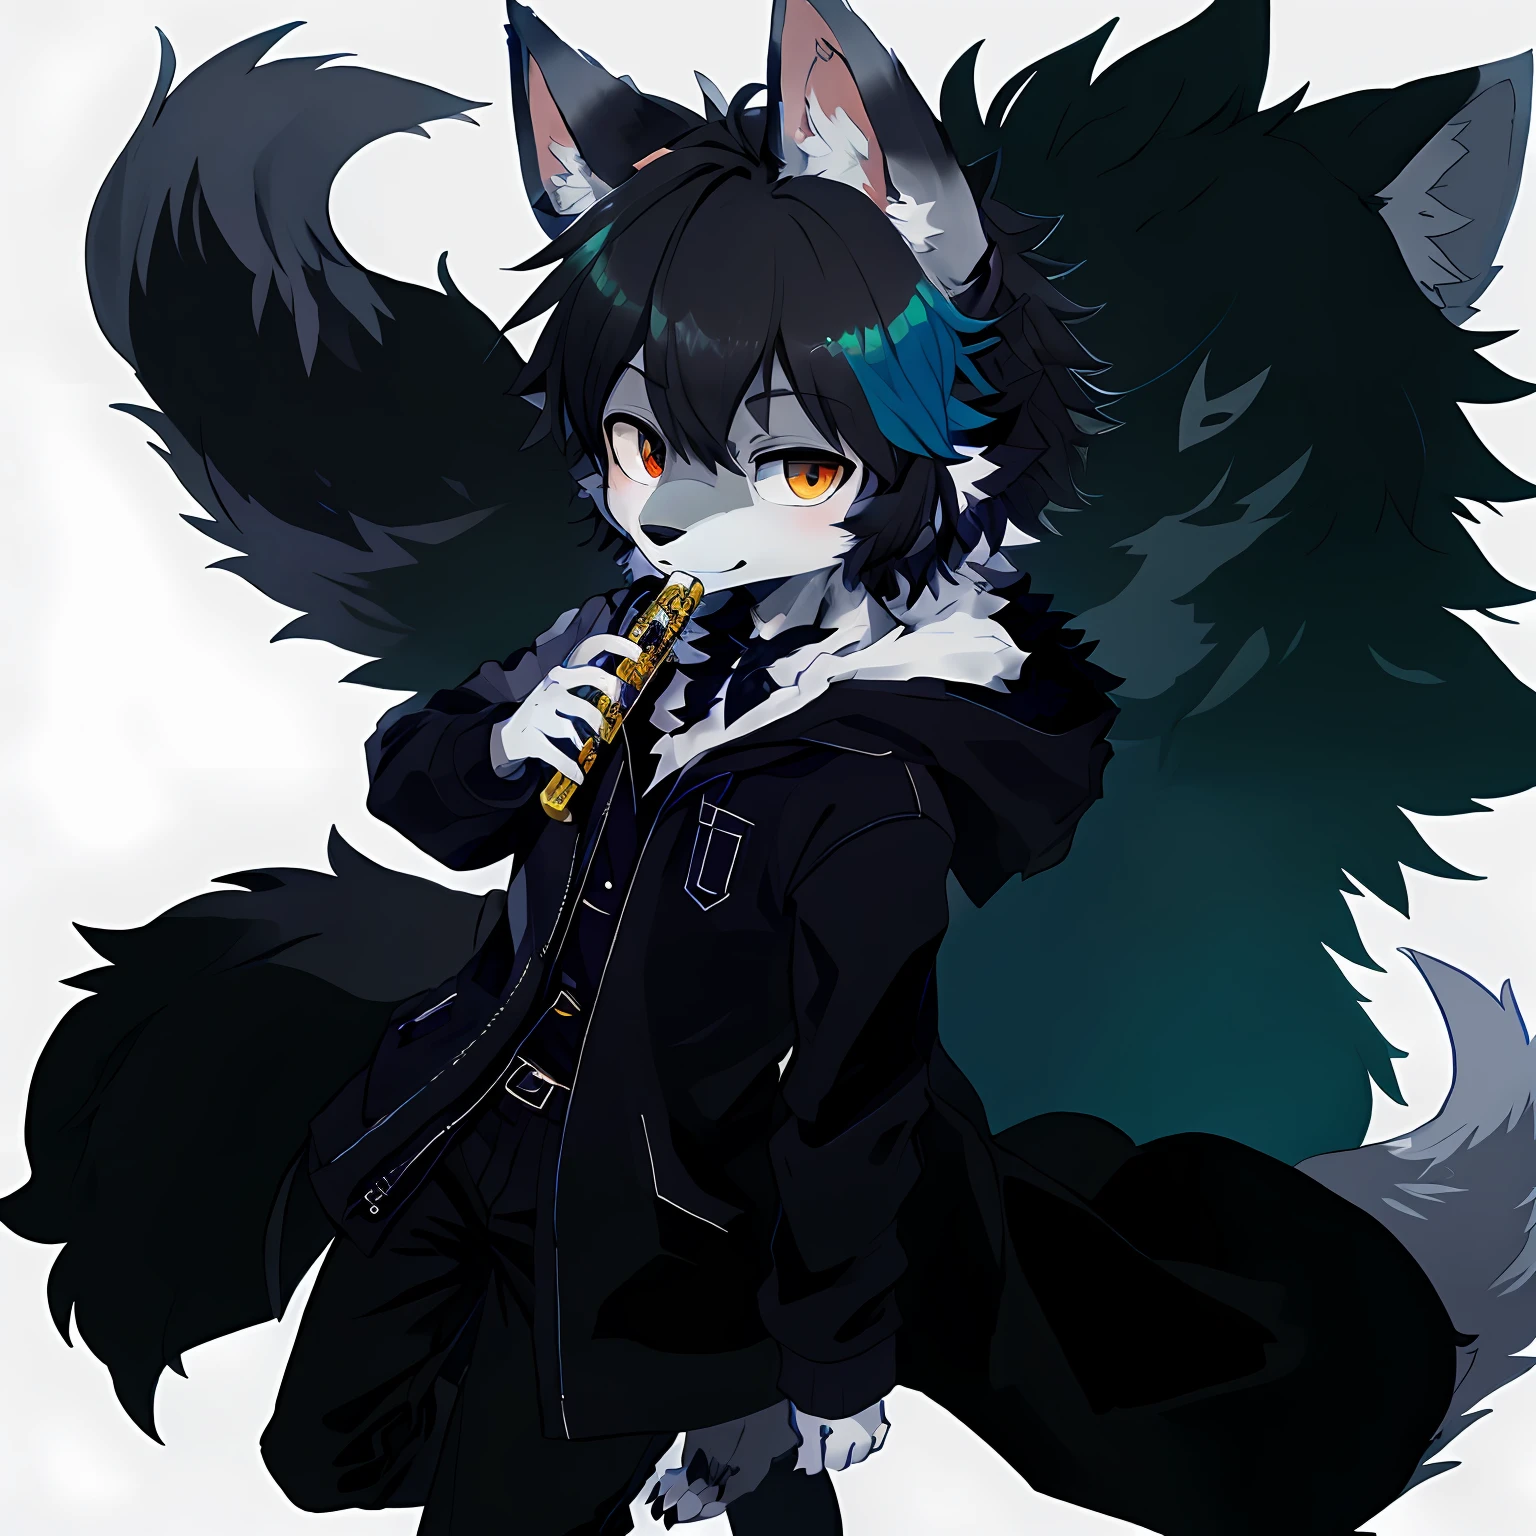 Uno lleva un abrigo gris y negro.(esponjoso antro peludo:1.3), Lobo gris peludo, (michiru:1.1),, 1 chico, Solo, pelo blanco,  orejas de lobo, flauta